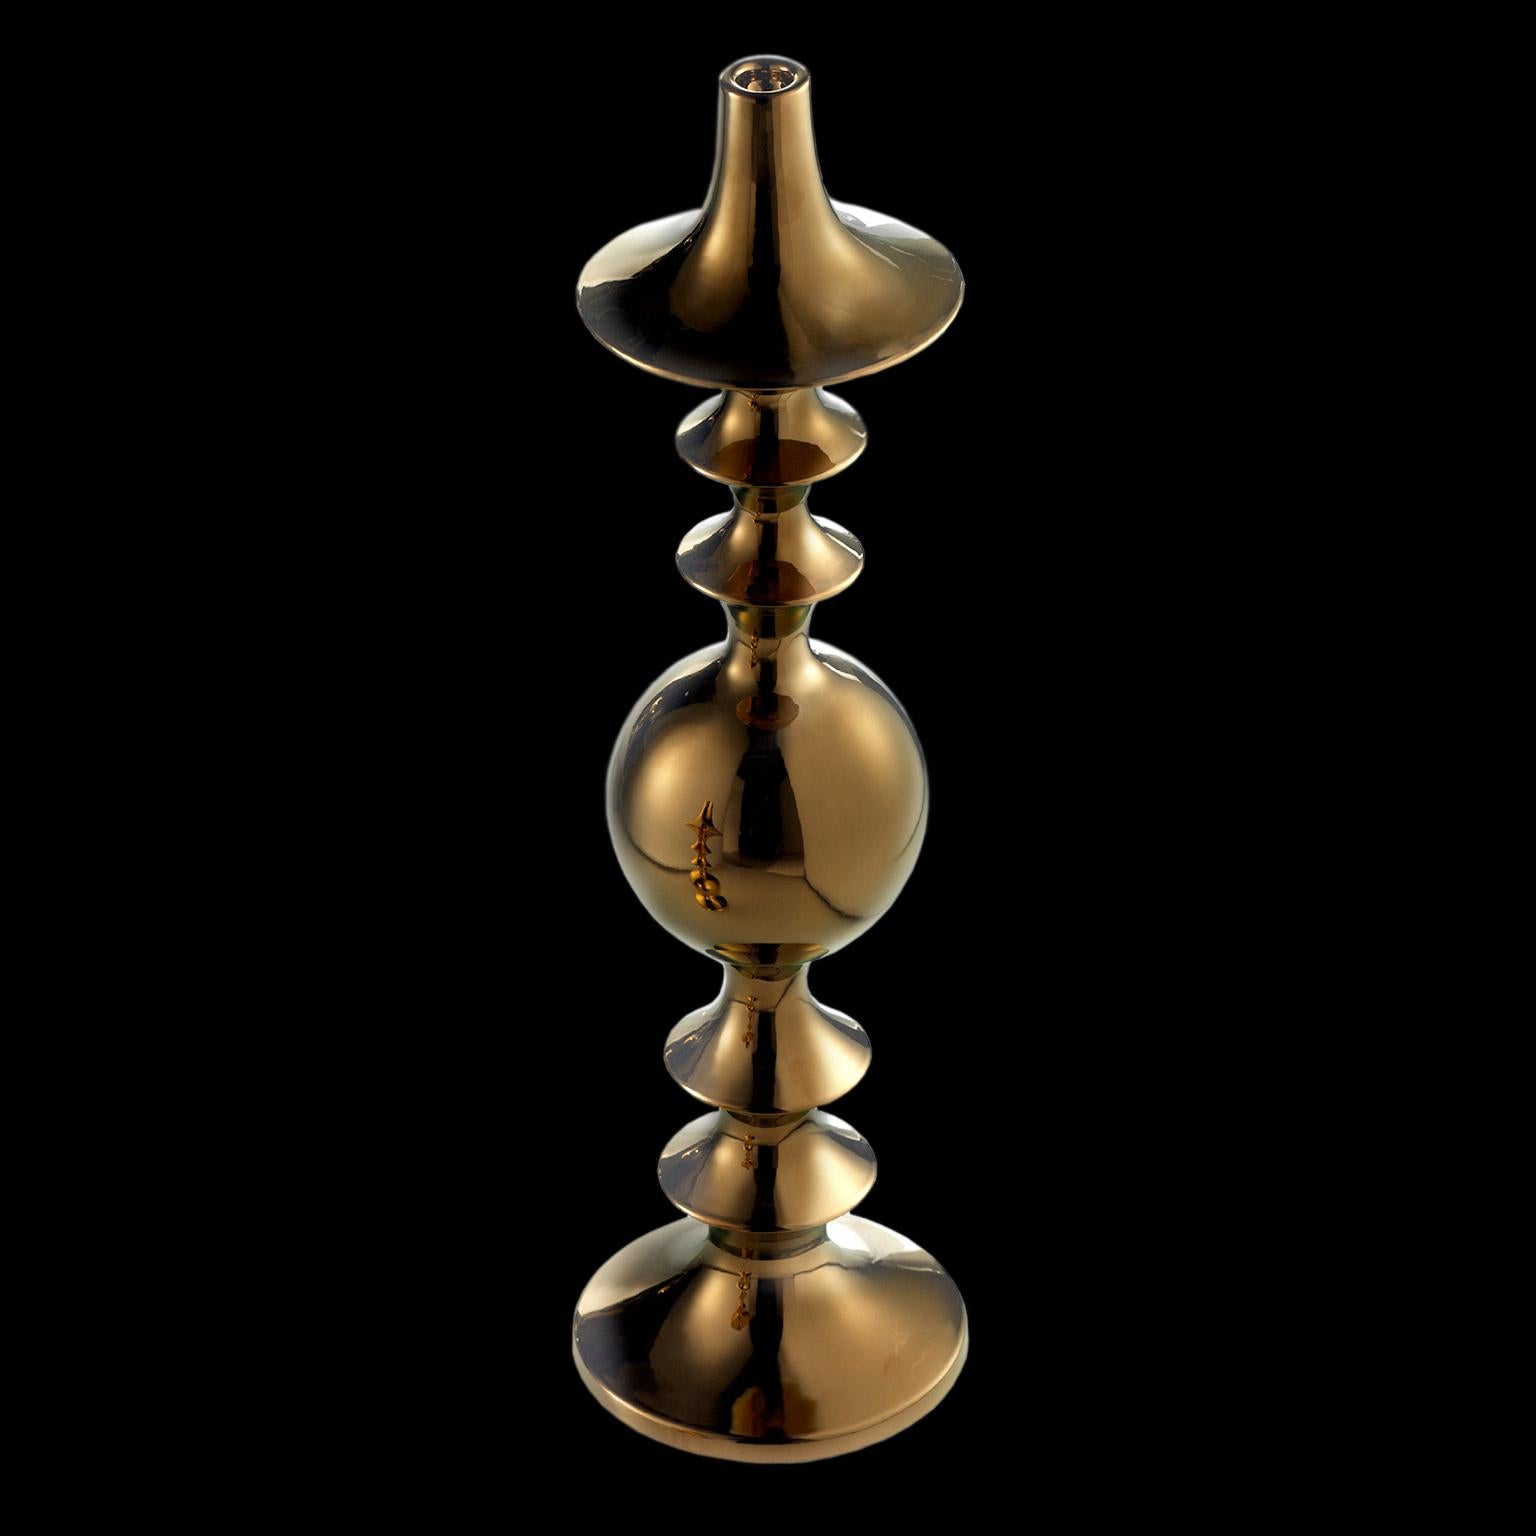 Ceramic vase handcrafted in bronze
BRIX II - code CA060 - H. 76.0 cm. - Dm. 20.0 cm.